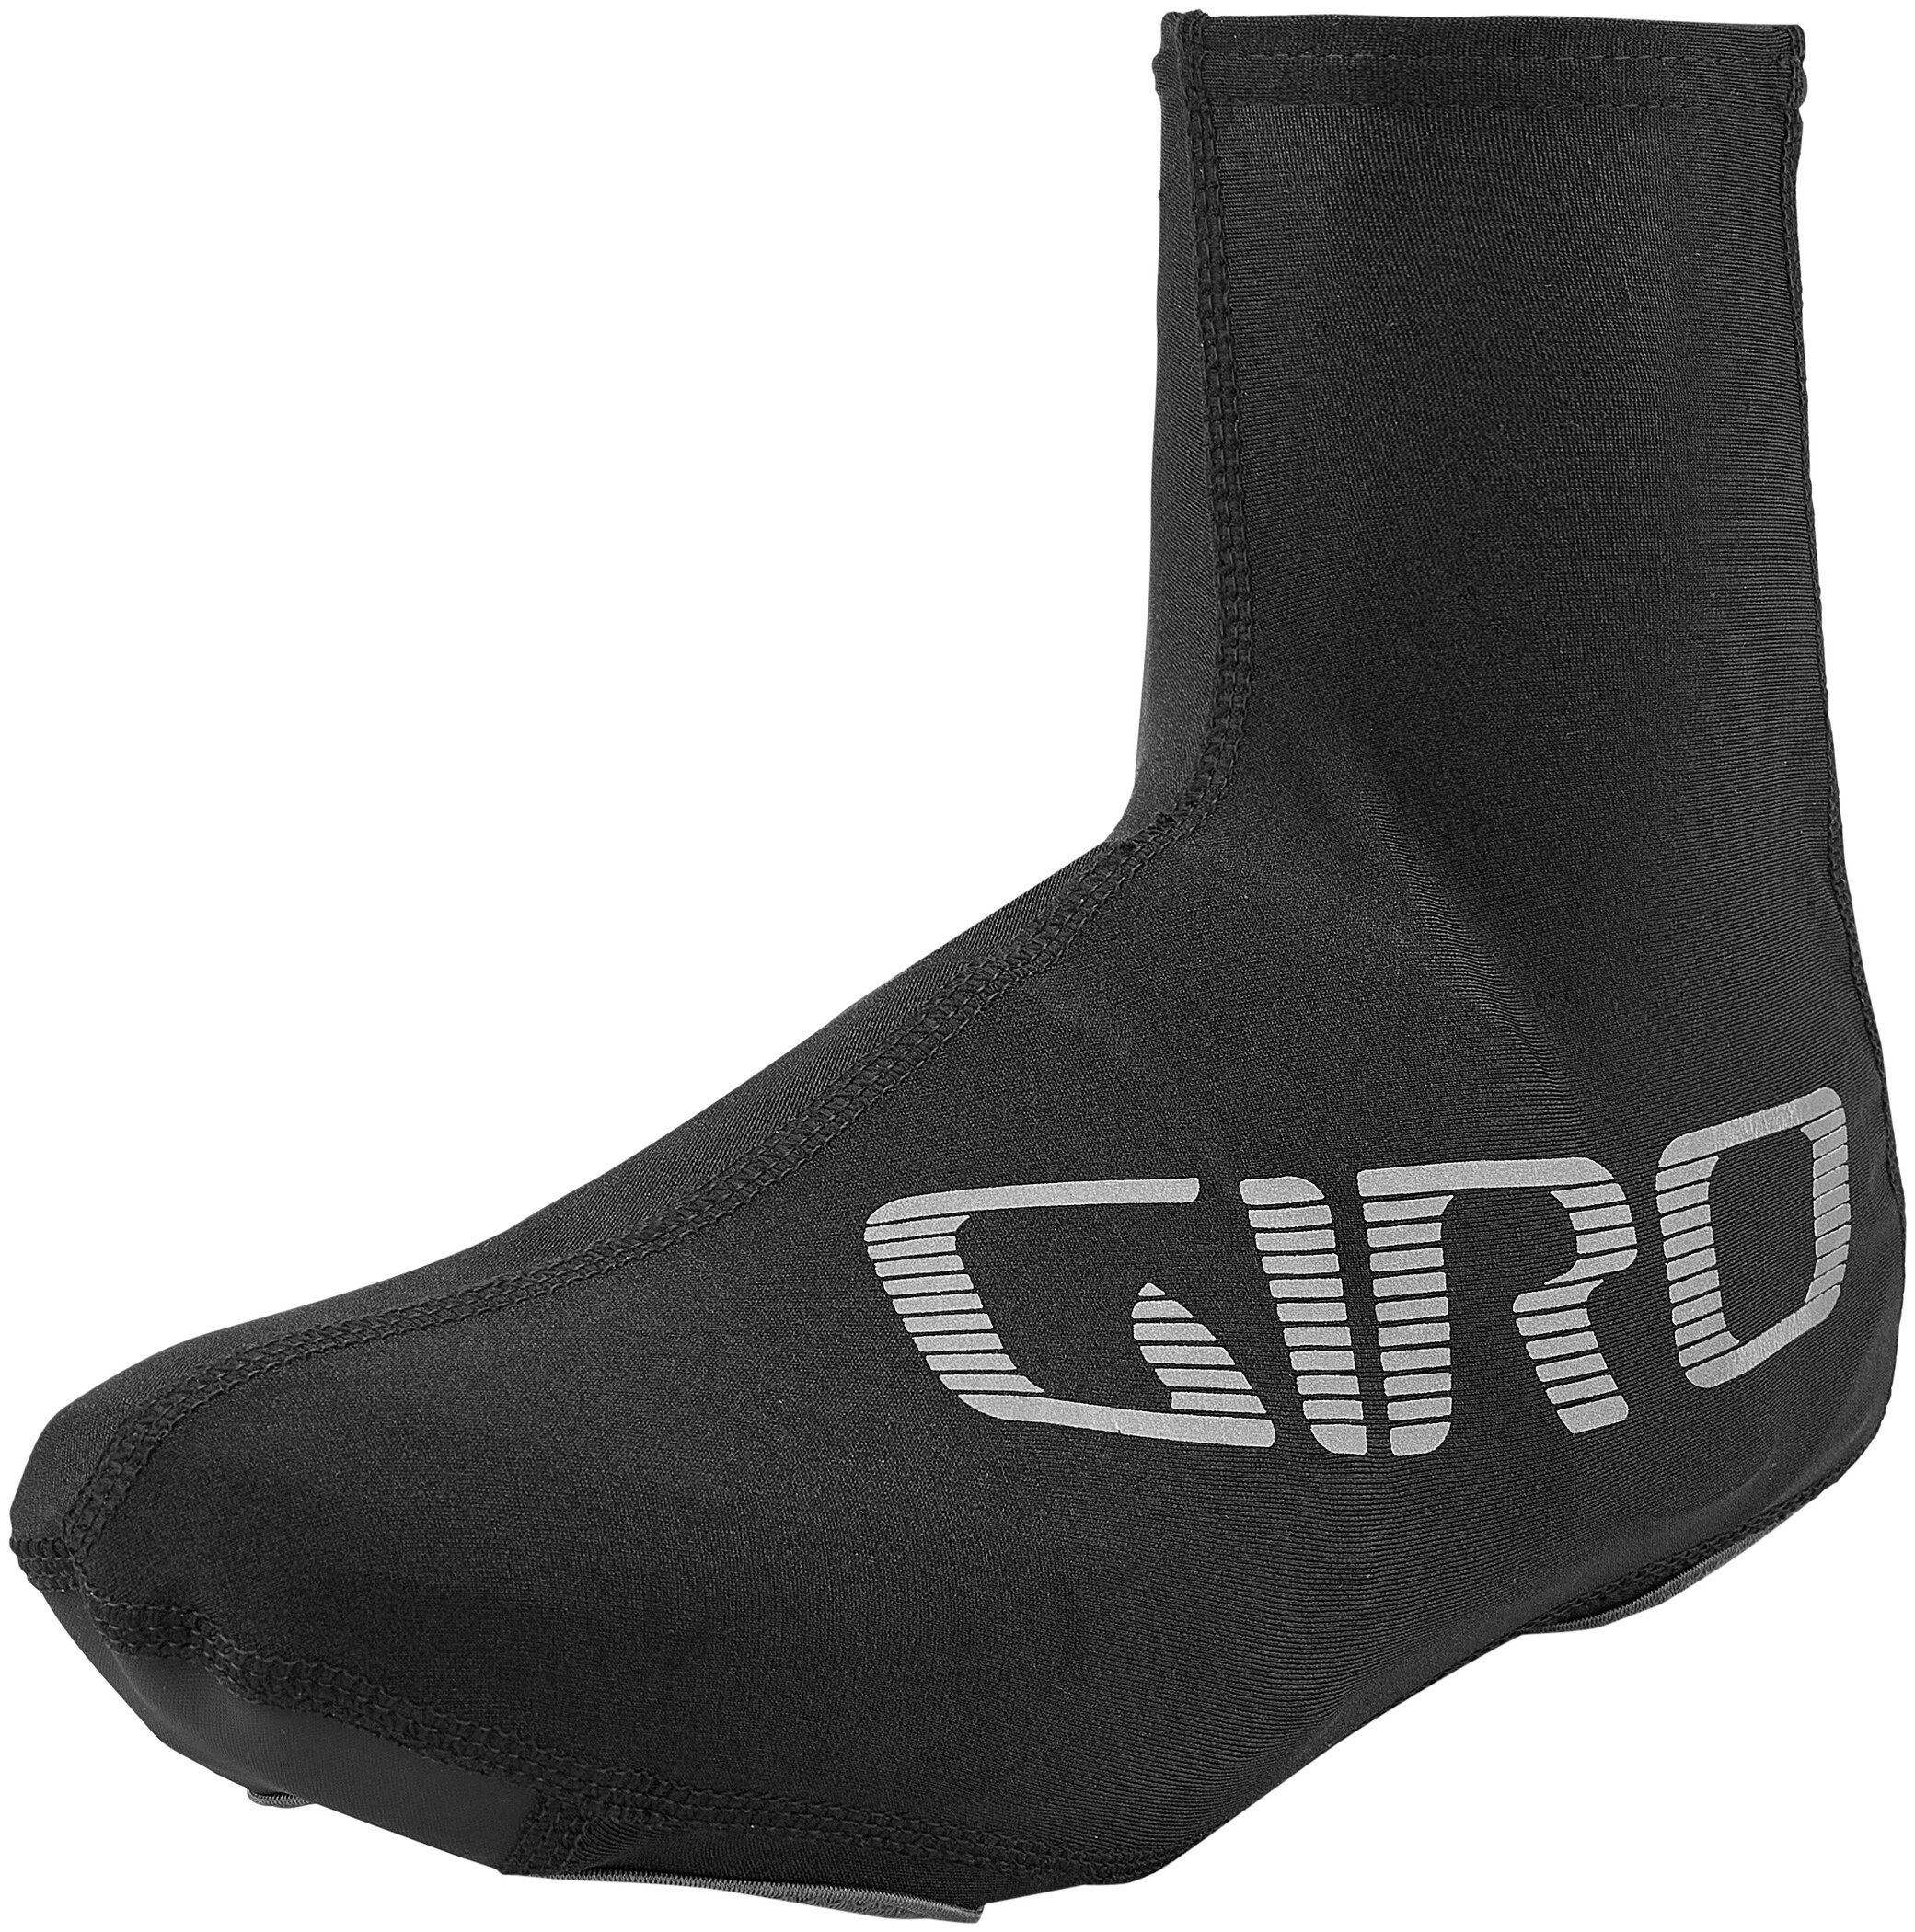 Hombre Giro Ultralight Aero Shoe Cover Ropa de Ciclismo 